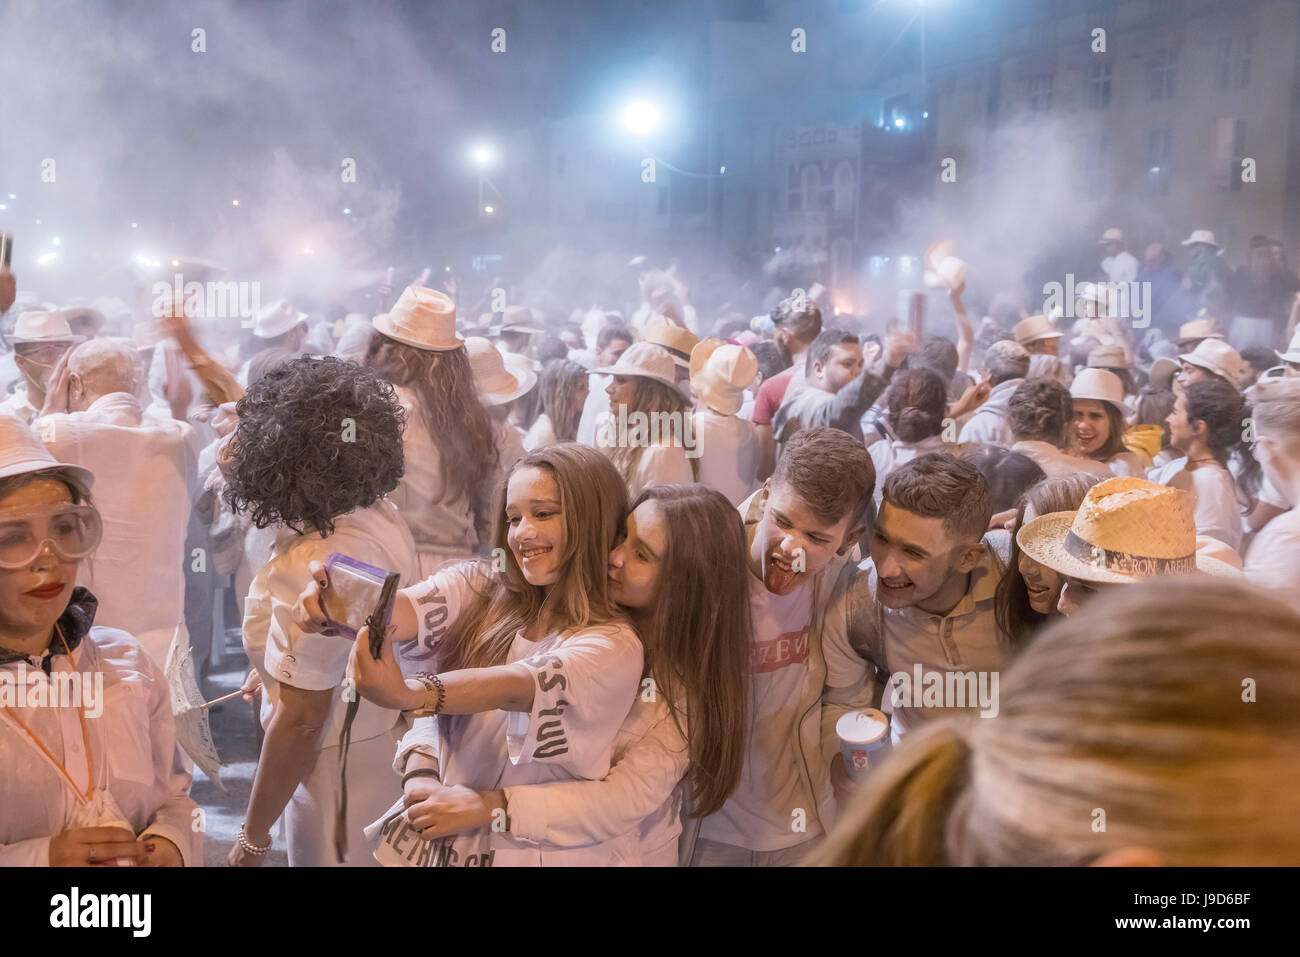 Weisses Pulver und weisse Kleidung beim Karneval la Fiesta de los Indianos, Las Palmas de Gran Canaria, Kanarische isole, Spanien | Los Indianos auto Foto Stock